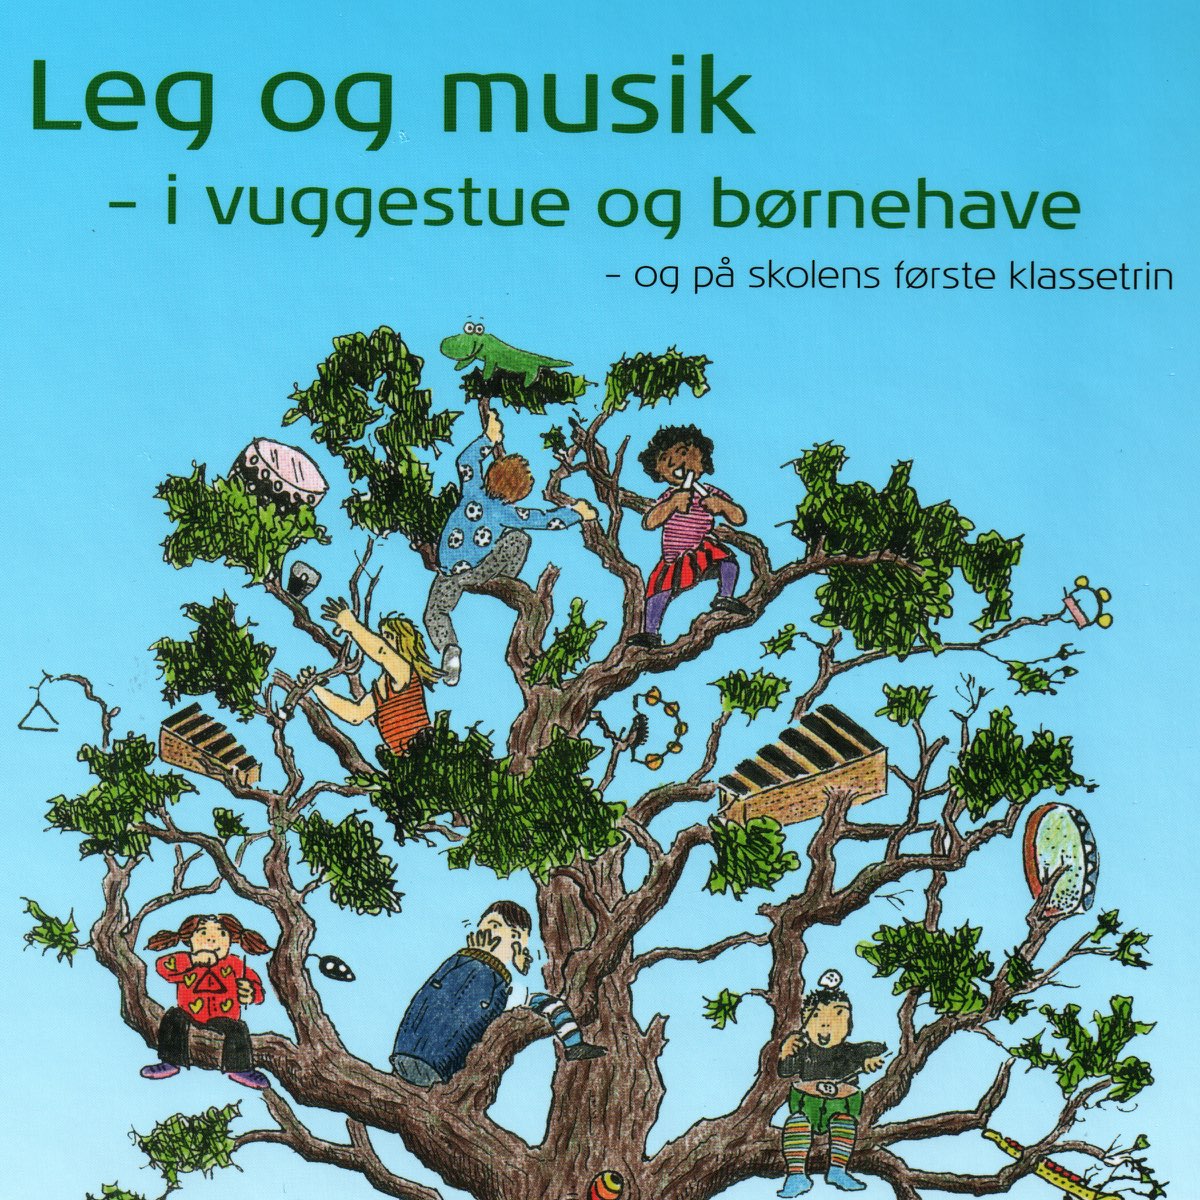 Leg Og Musik – I Vuggestue Og Børnehave by Hanne Kurup on Apple Music